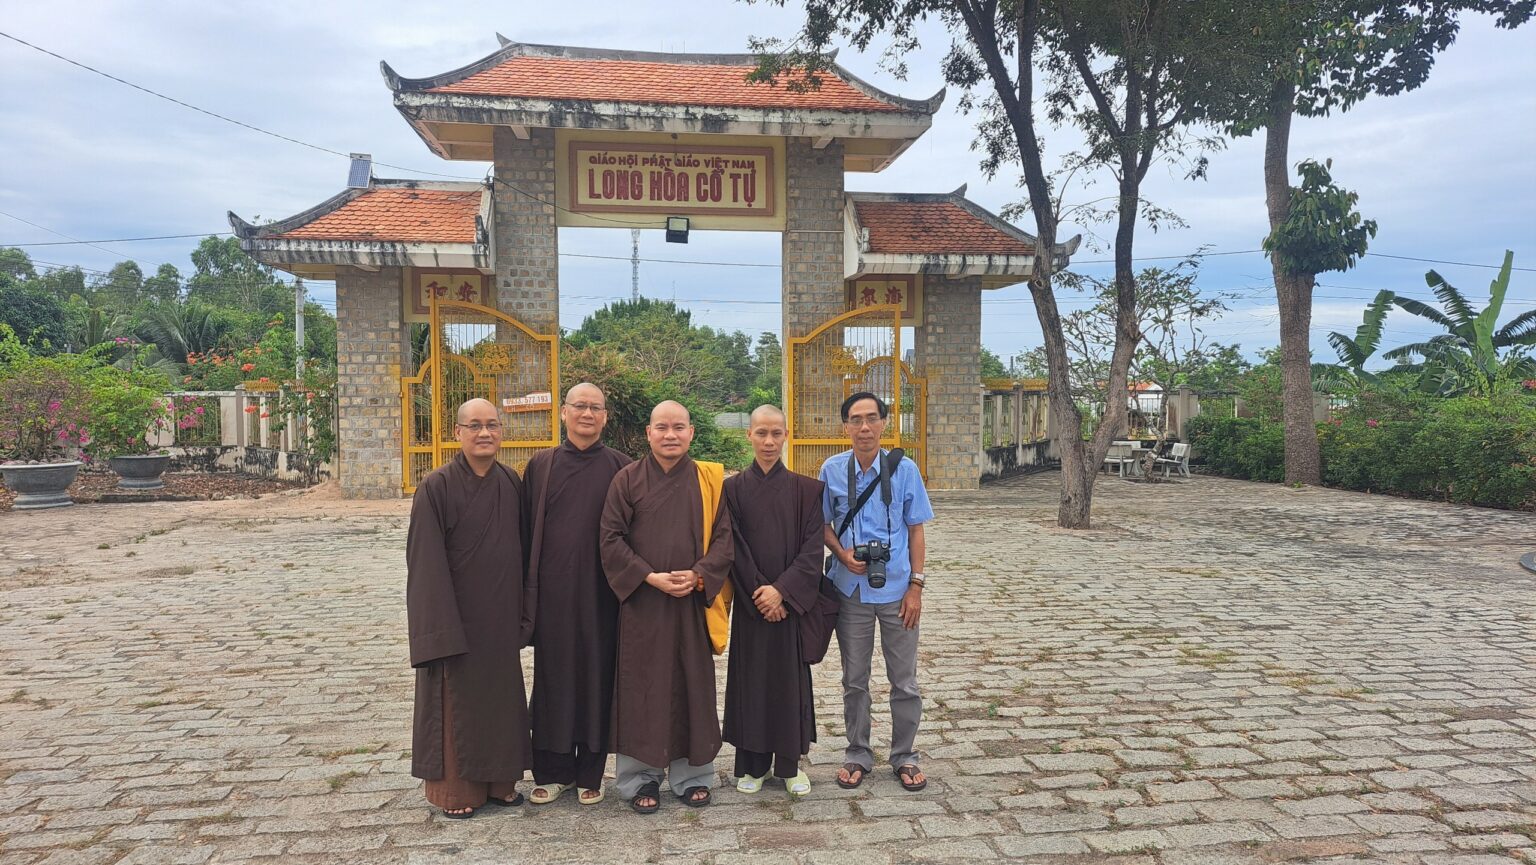 Trung tâm dịch thuật Hán Nôm Huệ Quang thực hiện tư liệu về chùa cổ và tư liệu về Phật giáo tại Bà Rịa Vũng Tàu